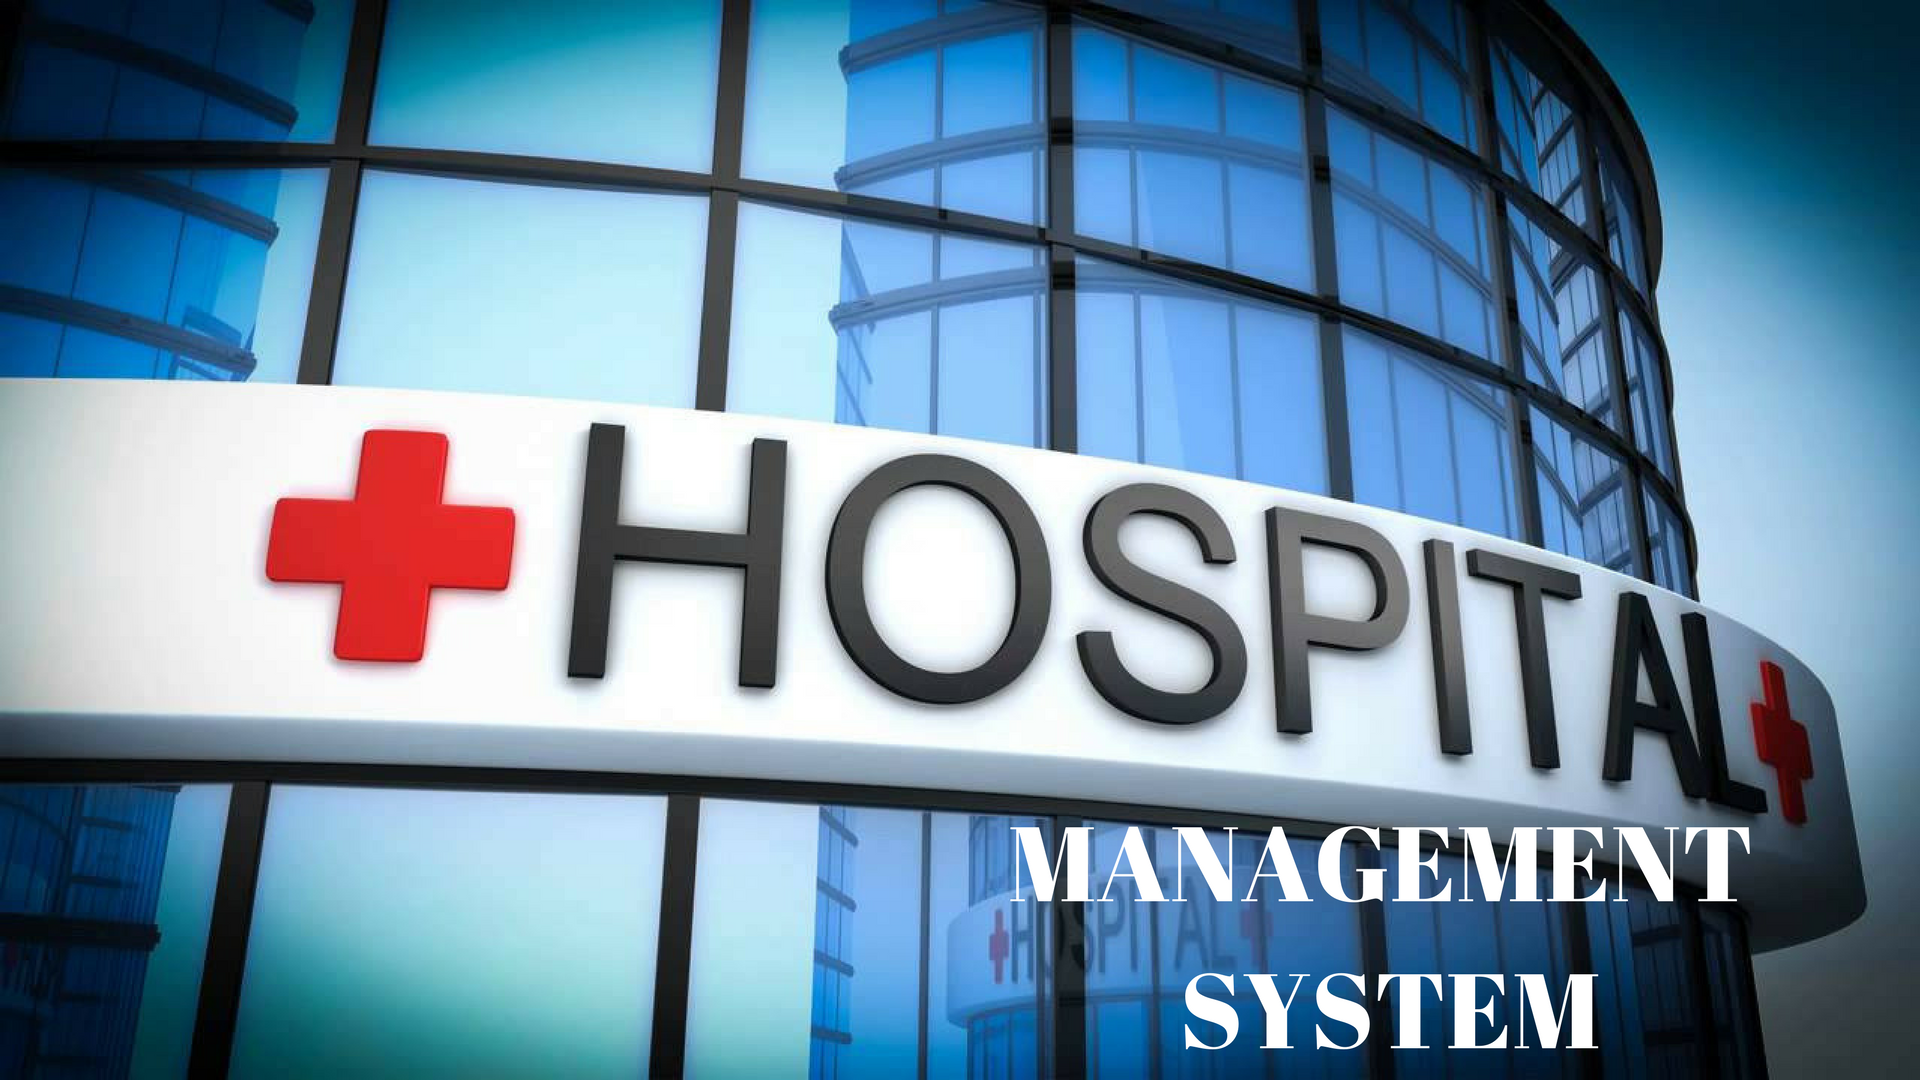 Hospital Management System - Hospital Management System Images Hd , HD Wallpaper & Backgrounds